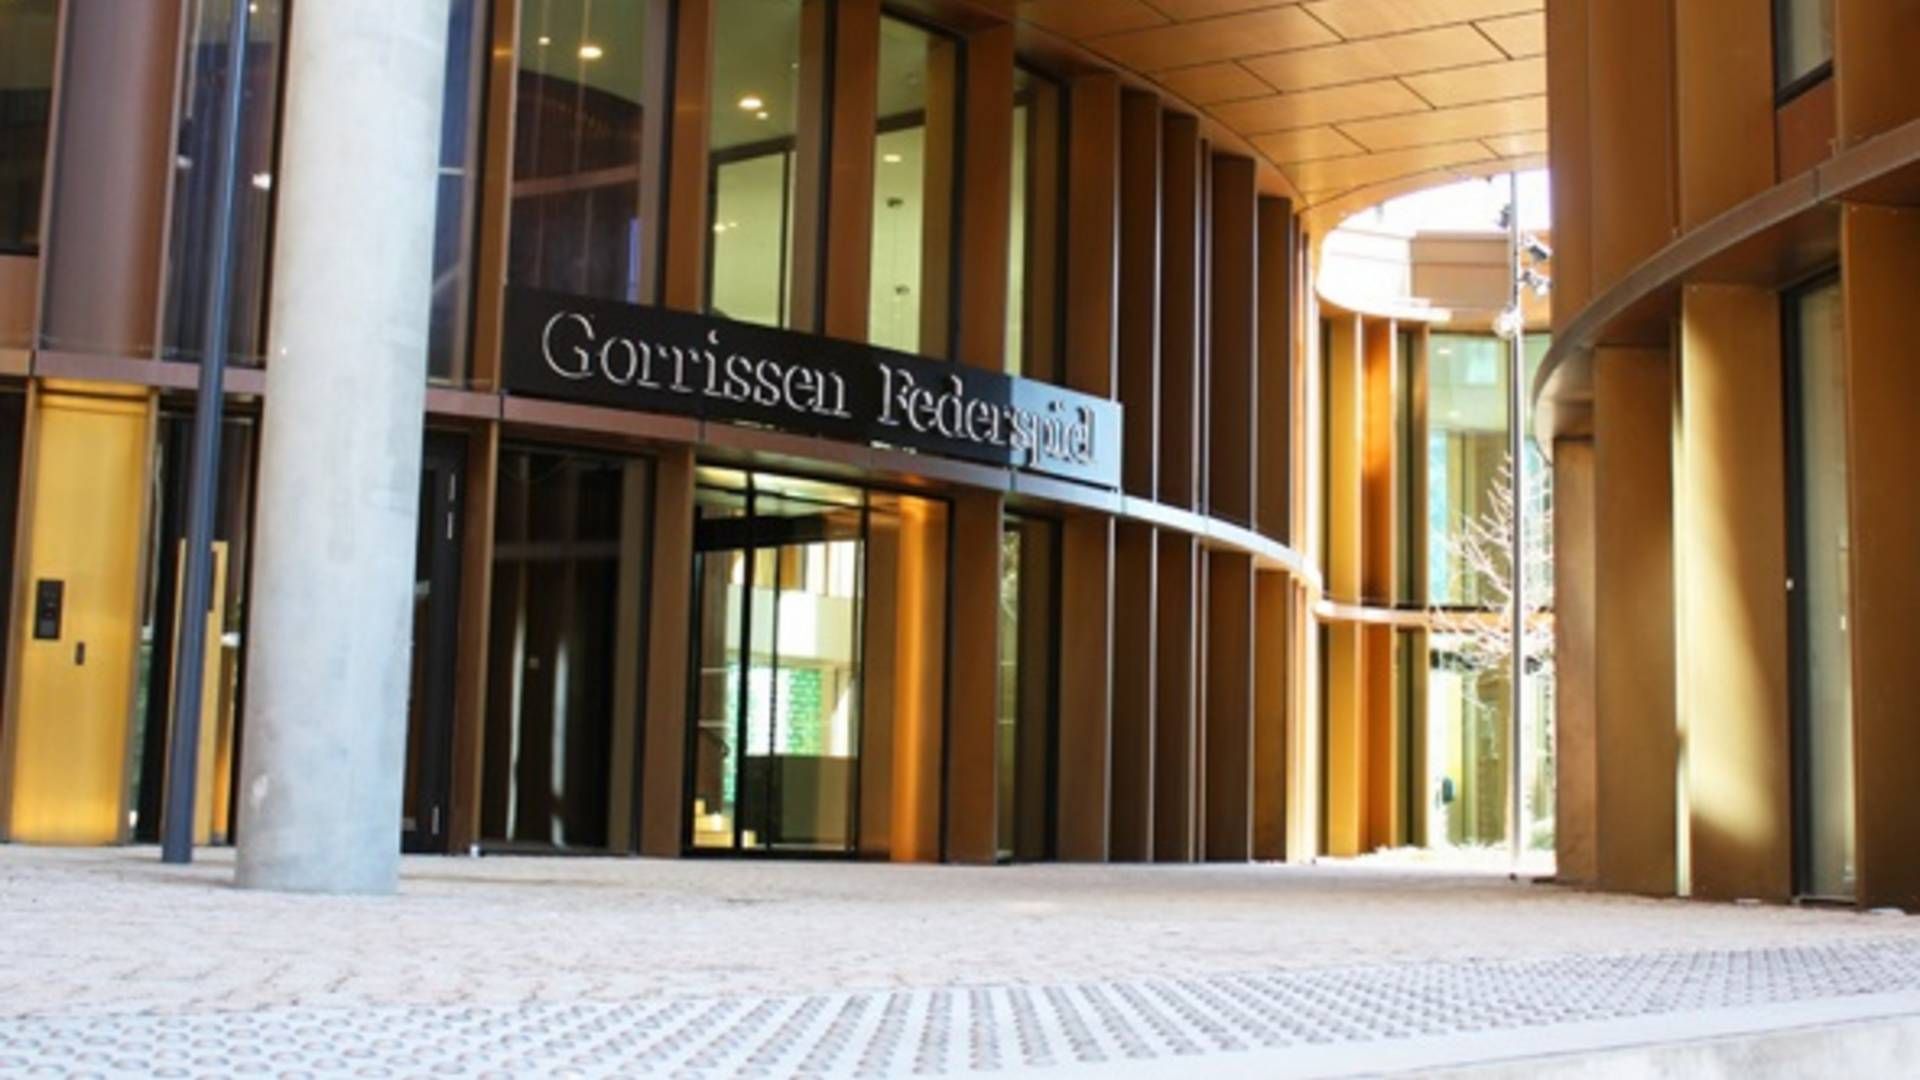 Gorrissen Federspiel er det advokatfirma, der har fået flest jurister ind ad døren i det seneste år. | Foto: PR